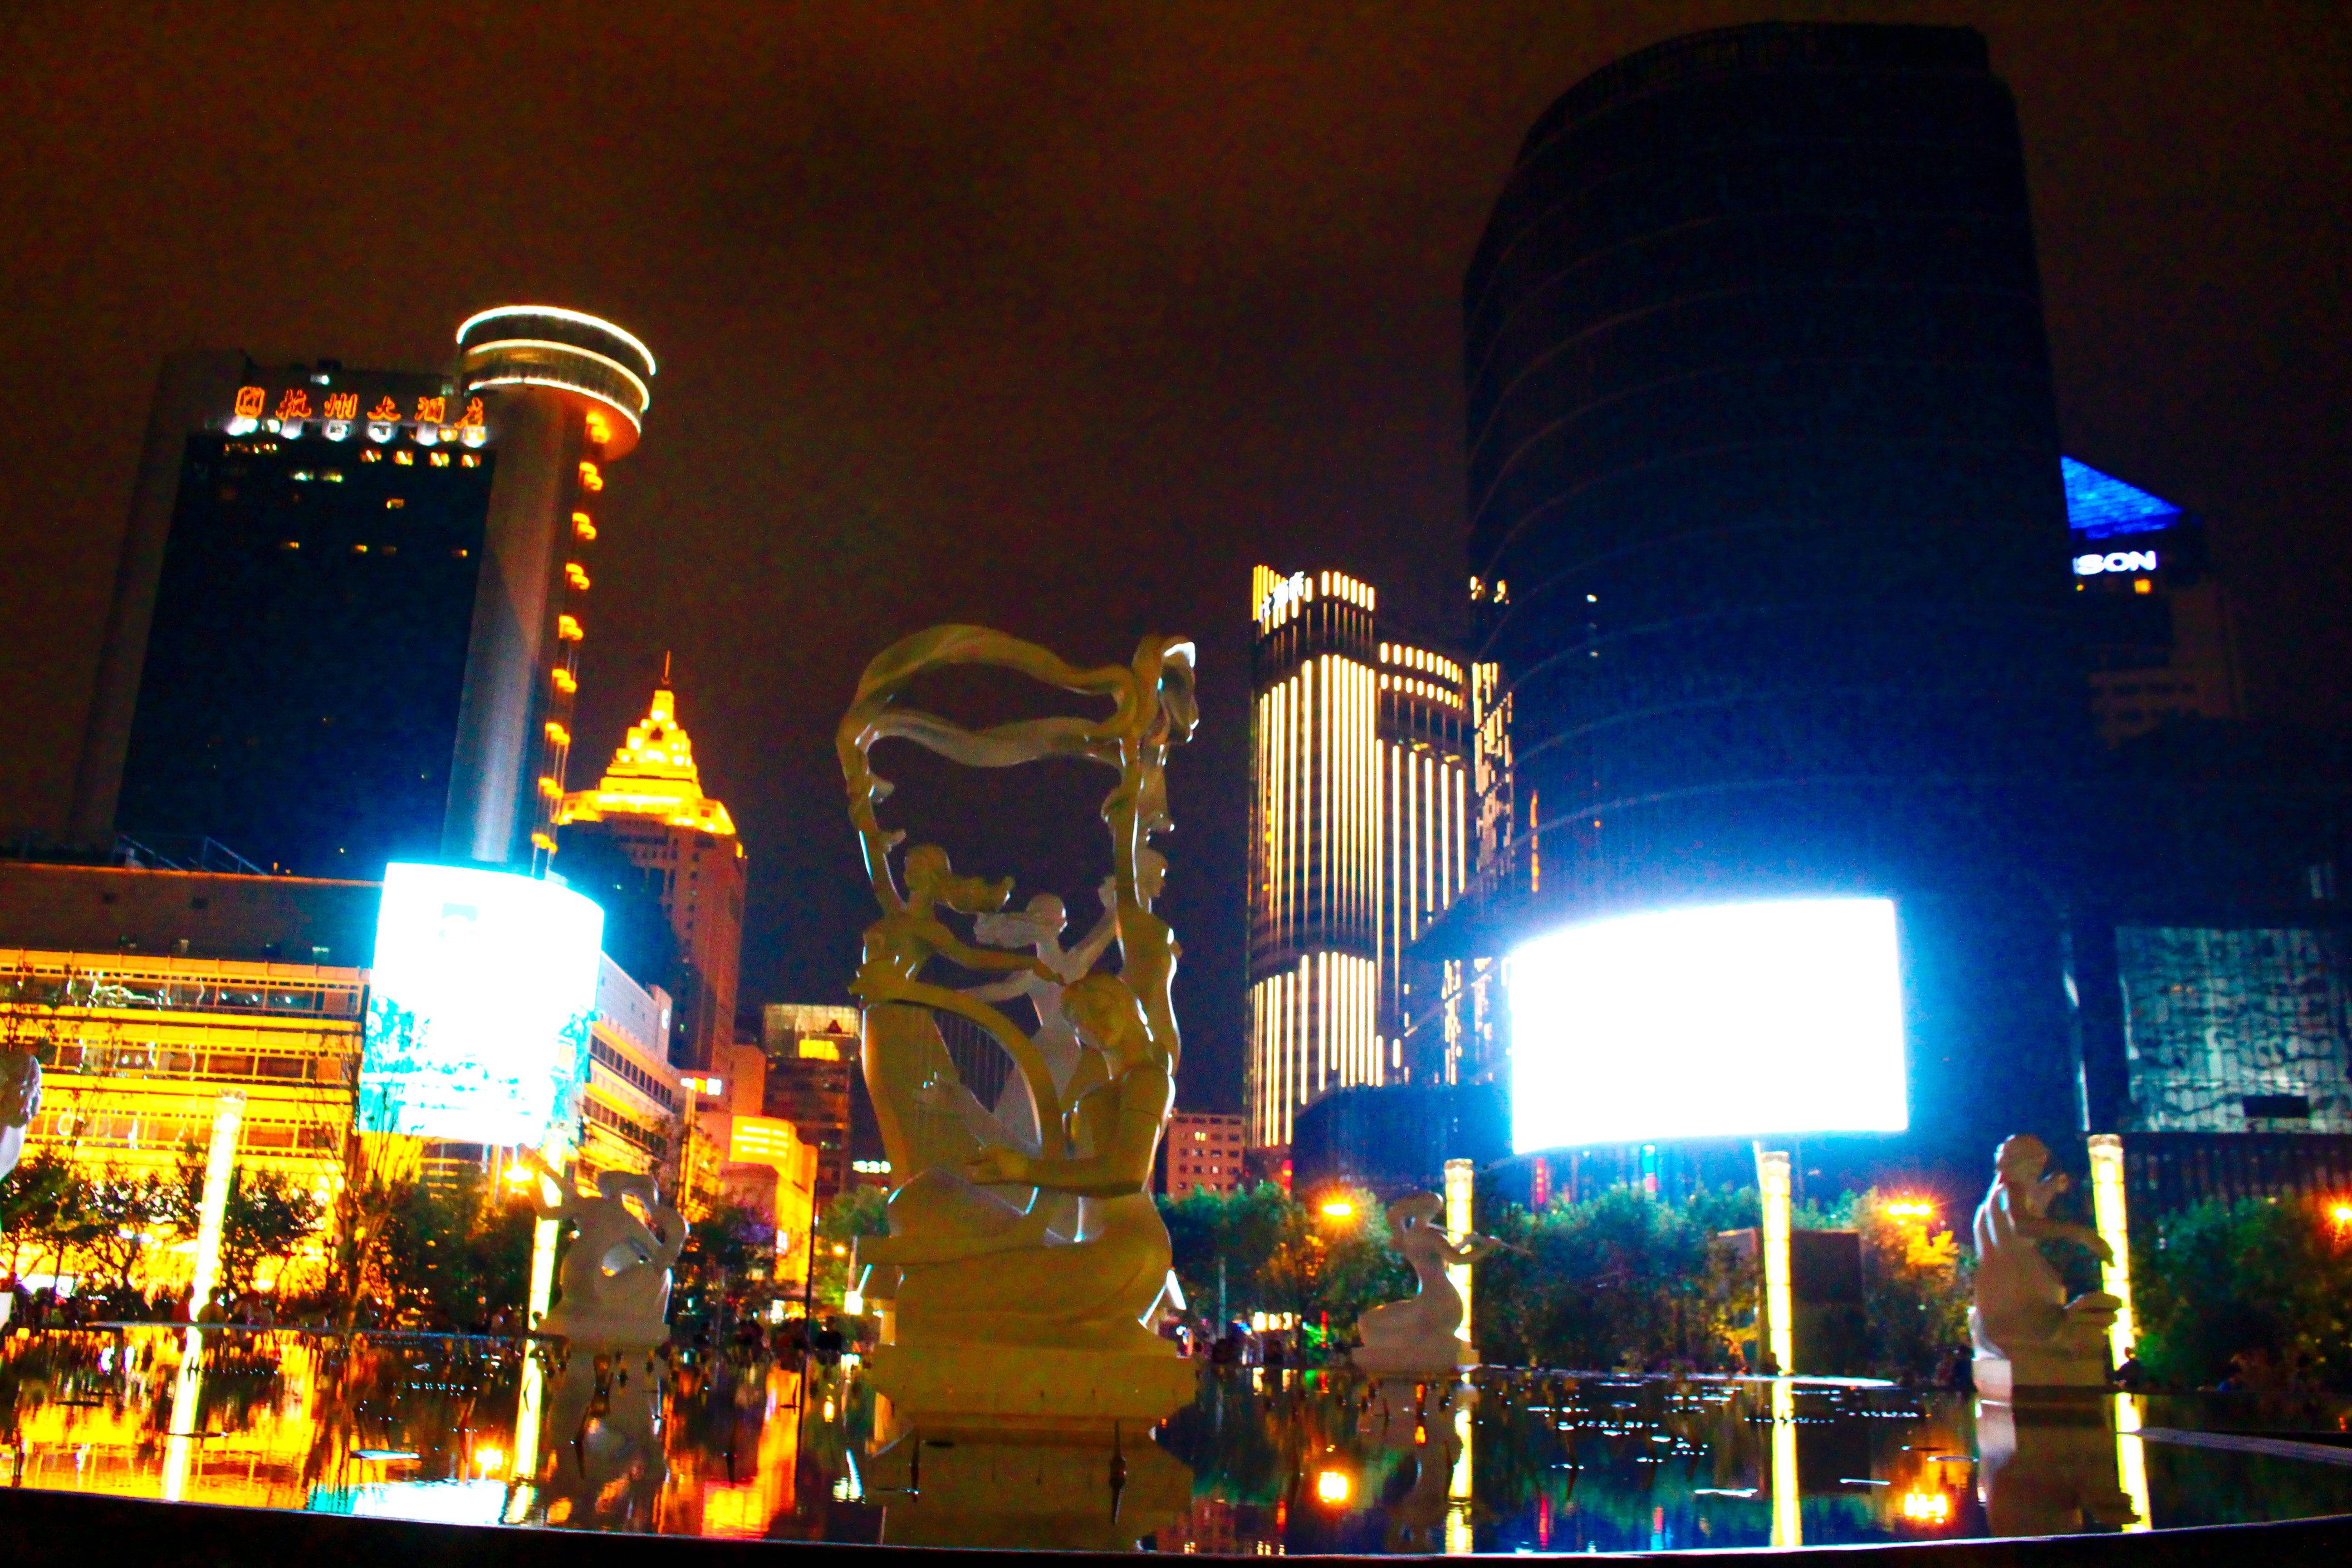 武林广场夜景图片